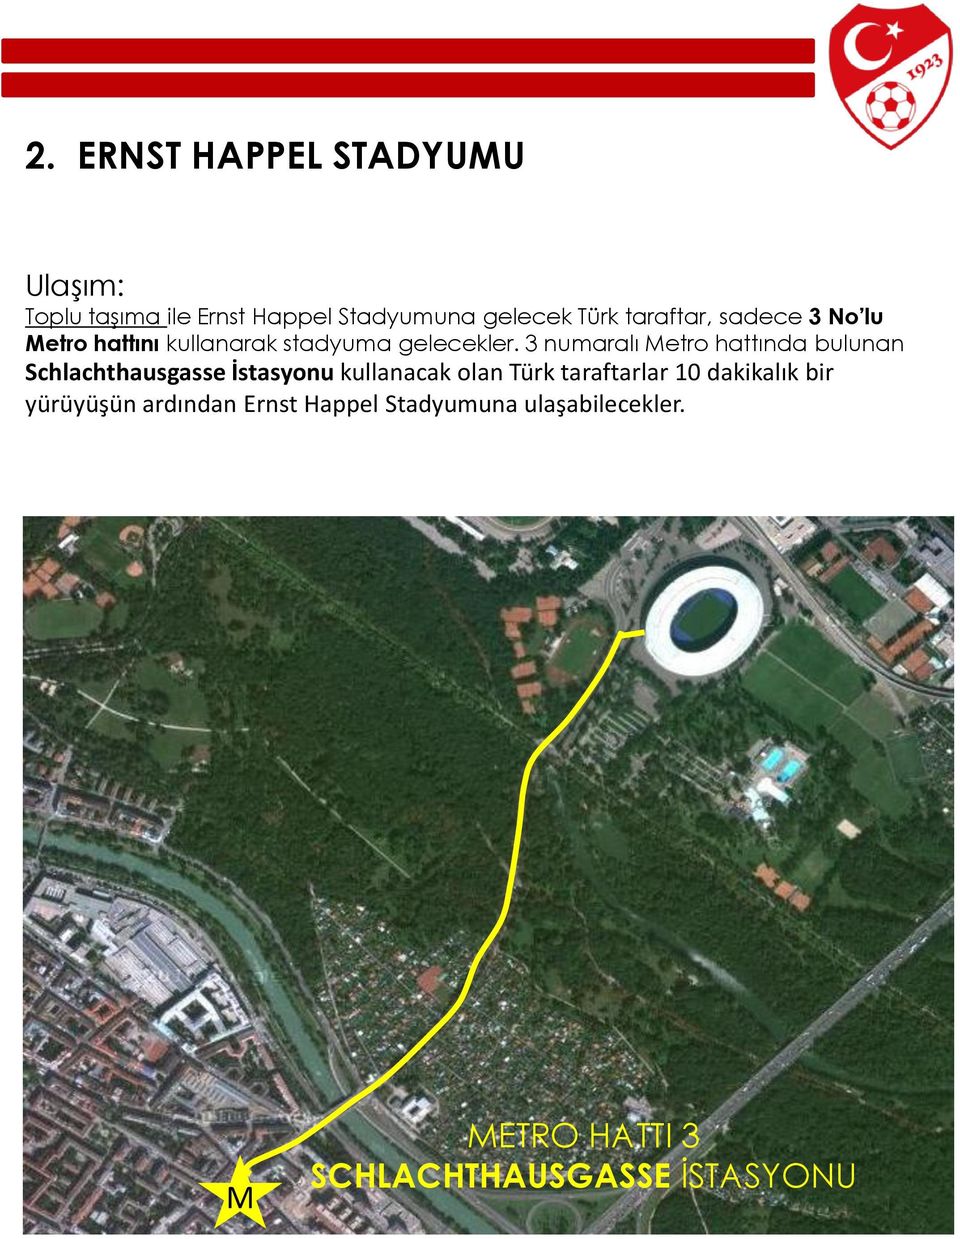 3 numaralı Metro hattında bulunan Schlachthausgasse İstasyonu kullanacak olan Türk